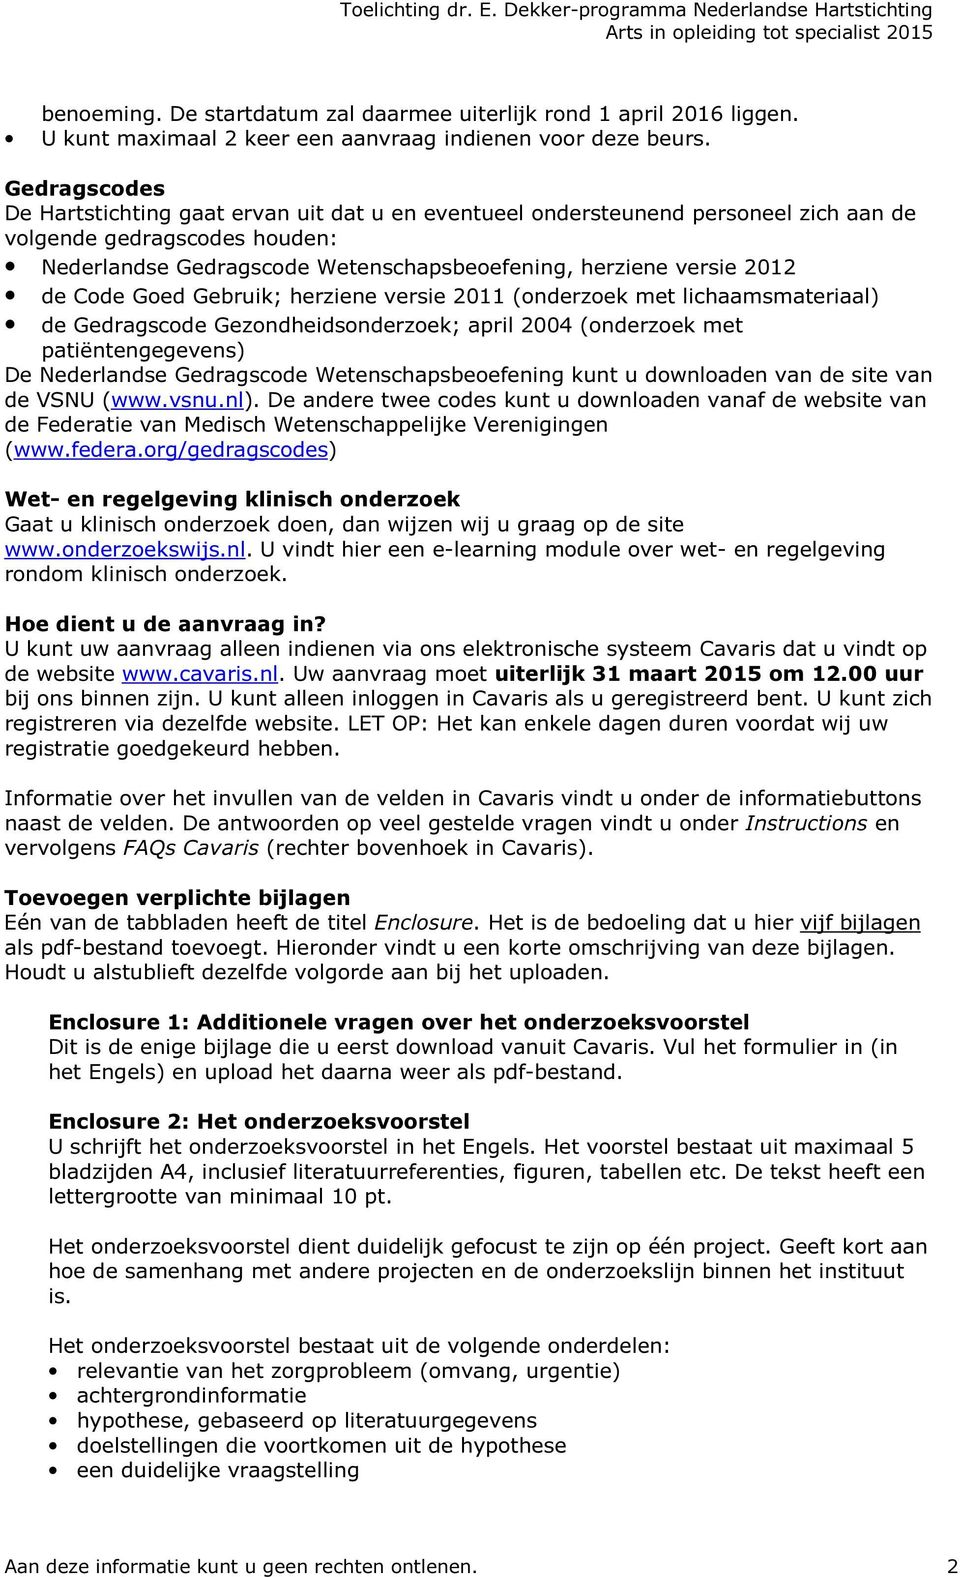 de Code Goed Gebruik; herziene versie 2011 (onderzoek met lichaamsmateriaal) de Gedragscode Gezondheidsonderzoek; april 2004 (onderzoek met patiëntengegevens) De Nederlandse Gedragscode